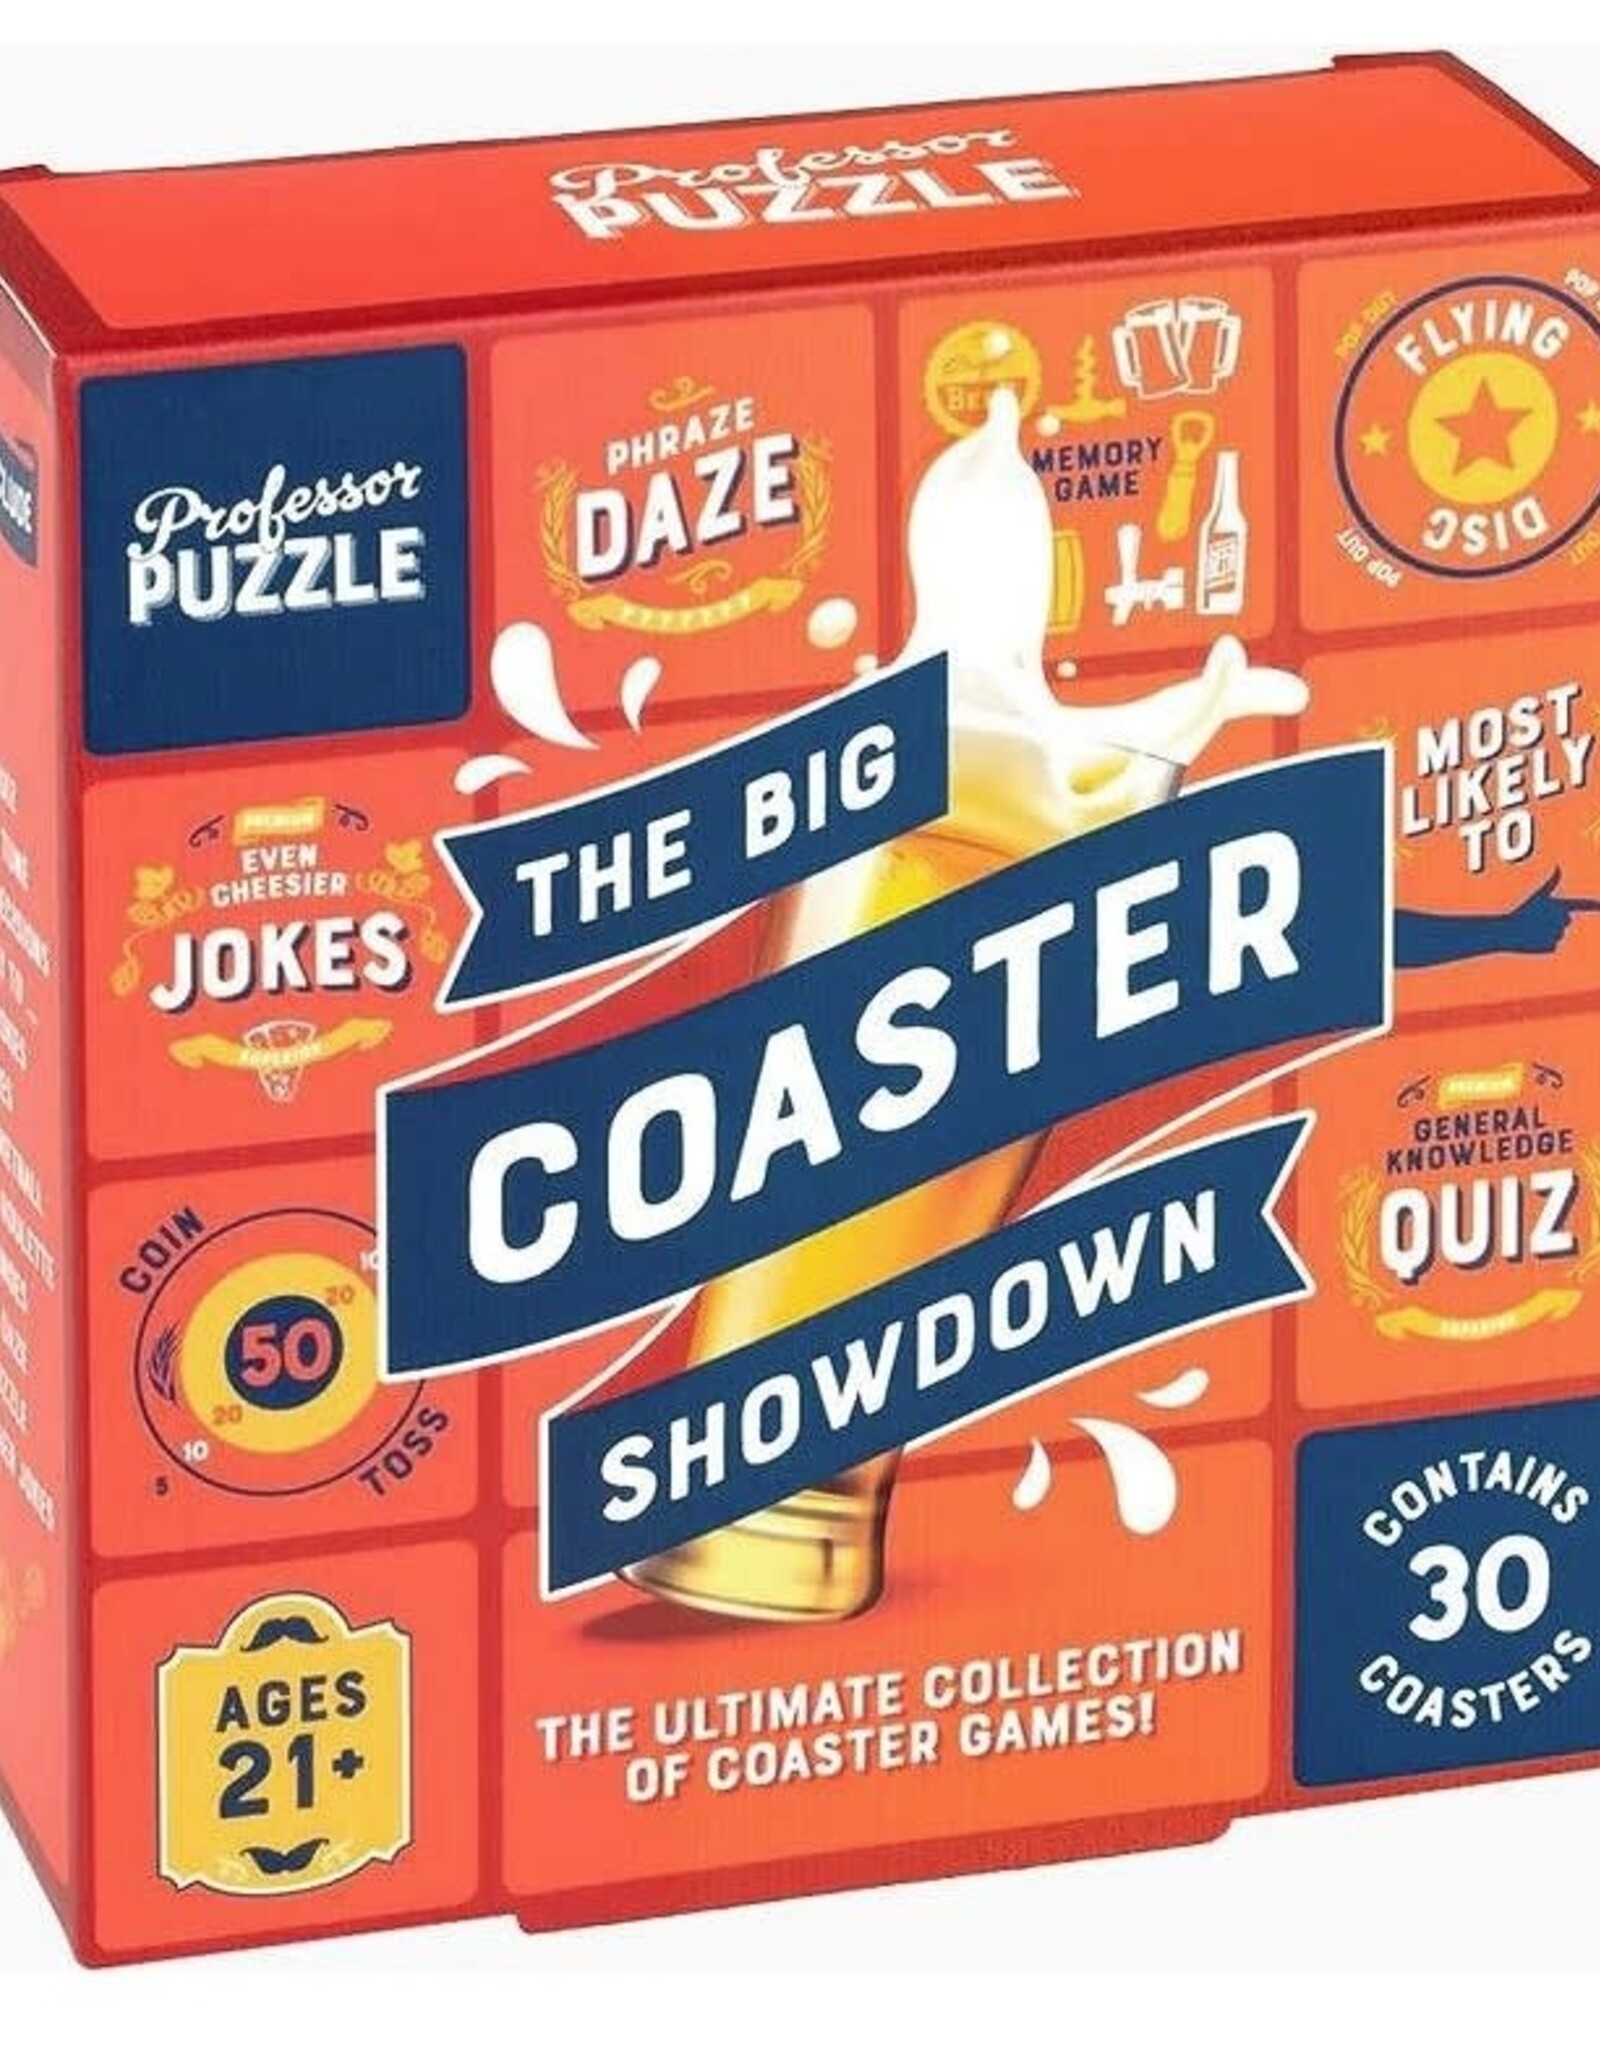 Professor Puzzle THE BIG COASTER SHOWDOWN GAMES